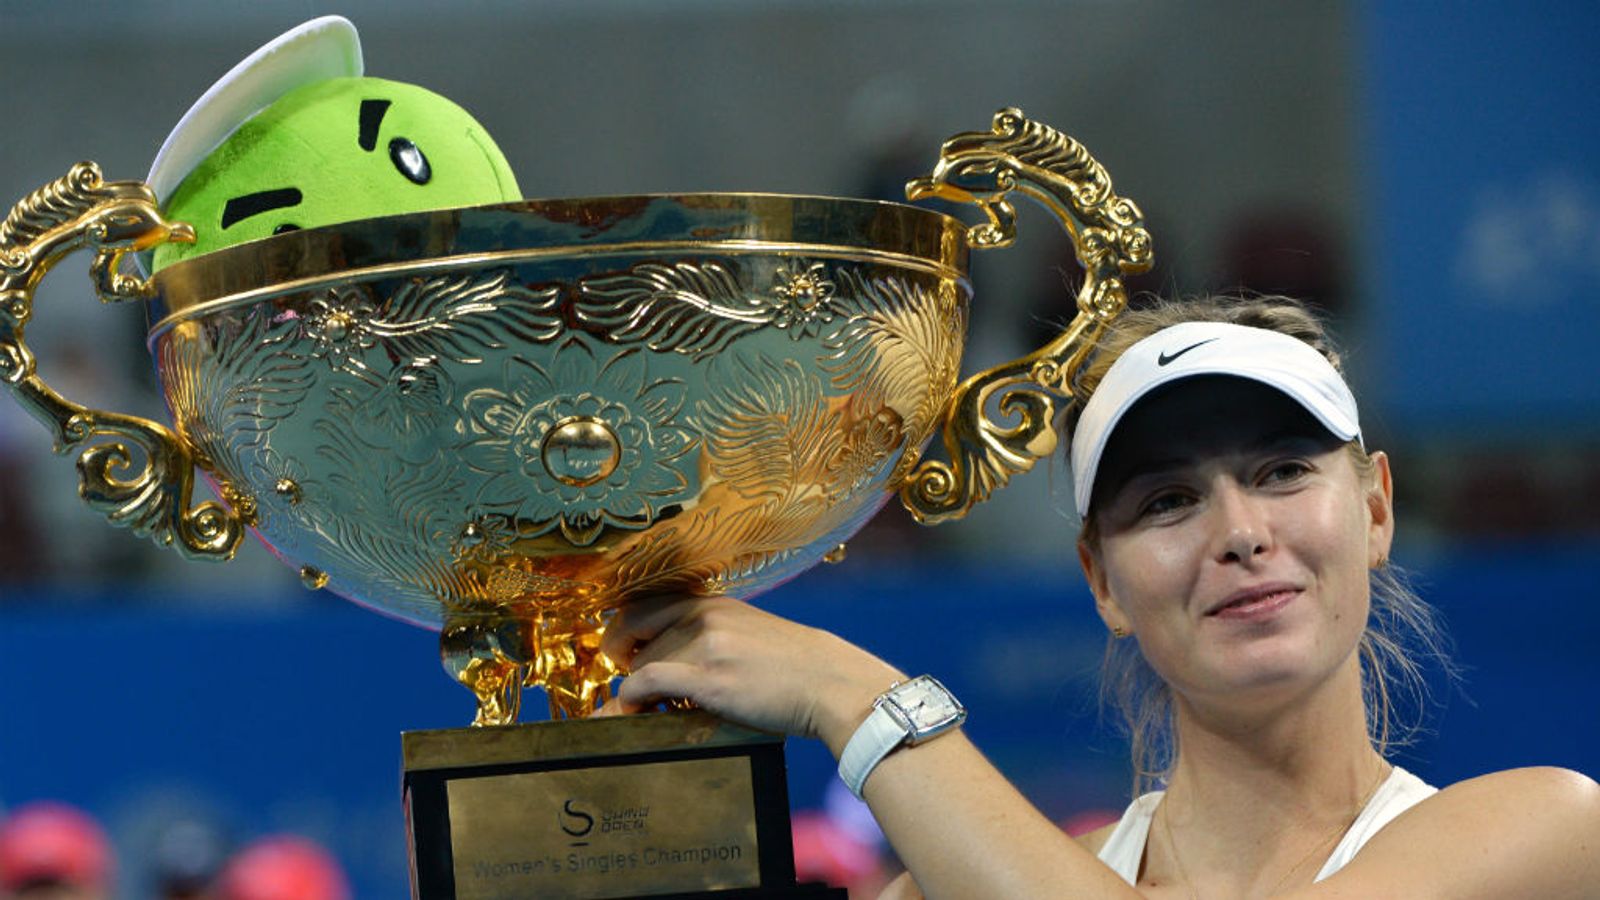 WTA China Open Maria Sharapova beats Petra Kvitova to seal her fourth